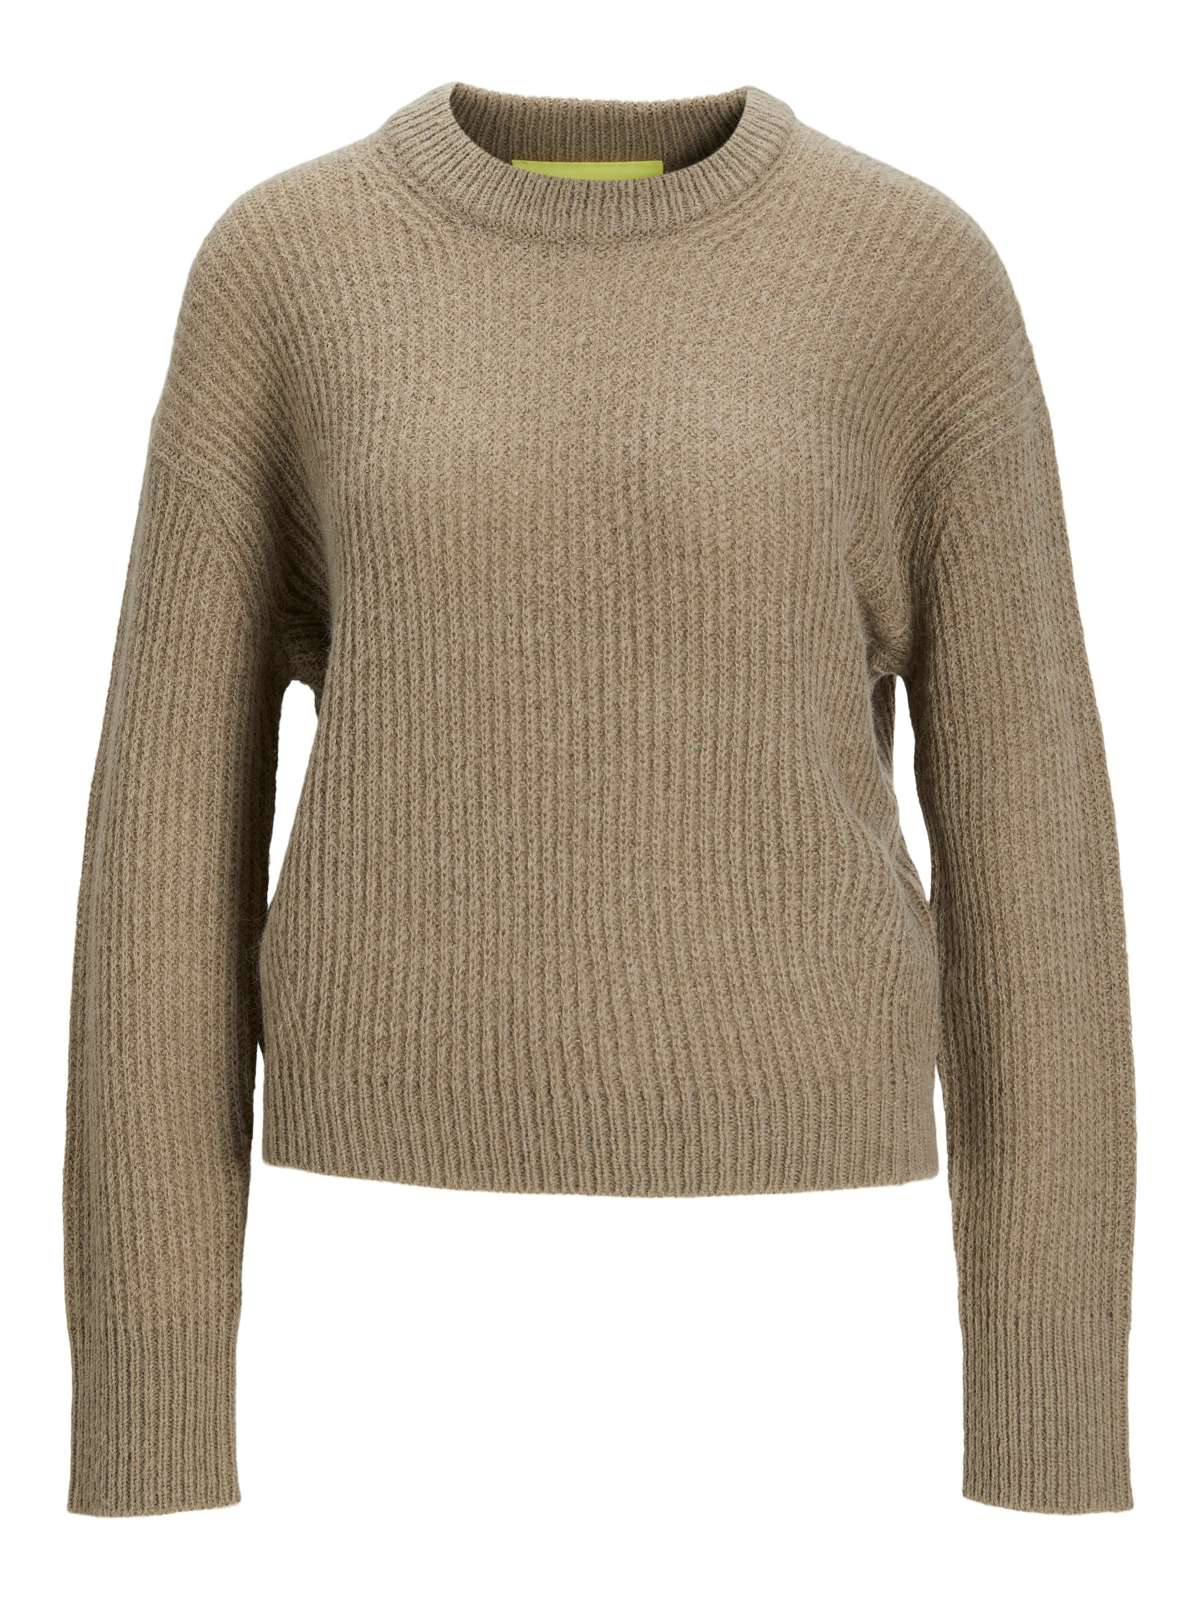 Вязаный свитер Ember (1 шт.) Подробнее